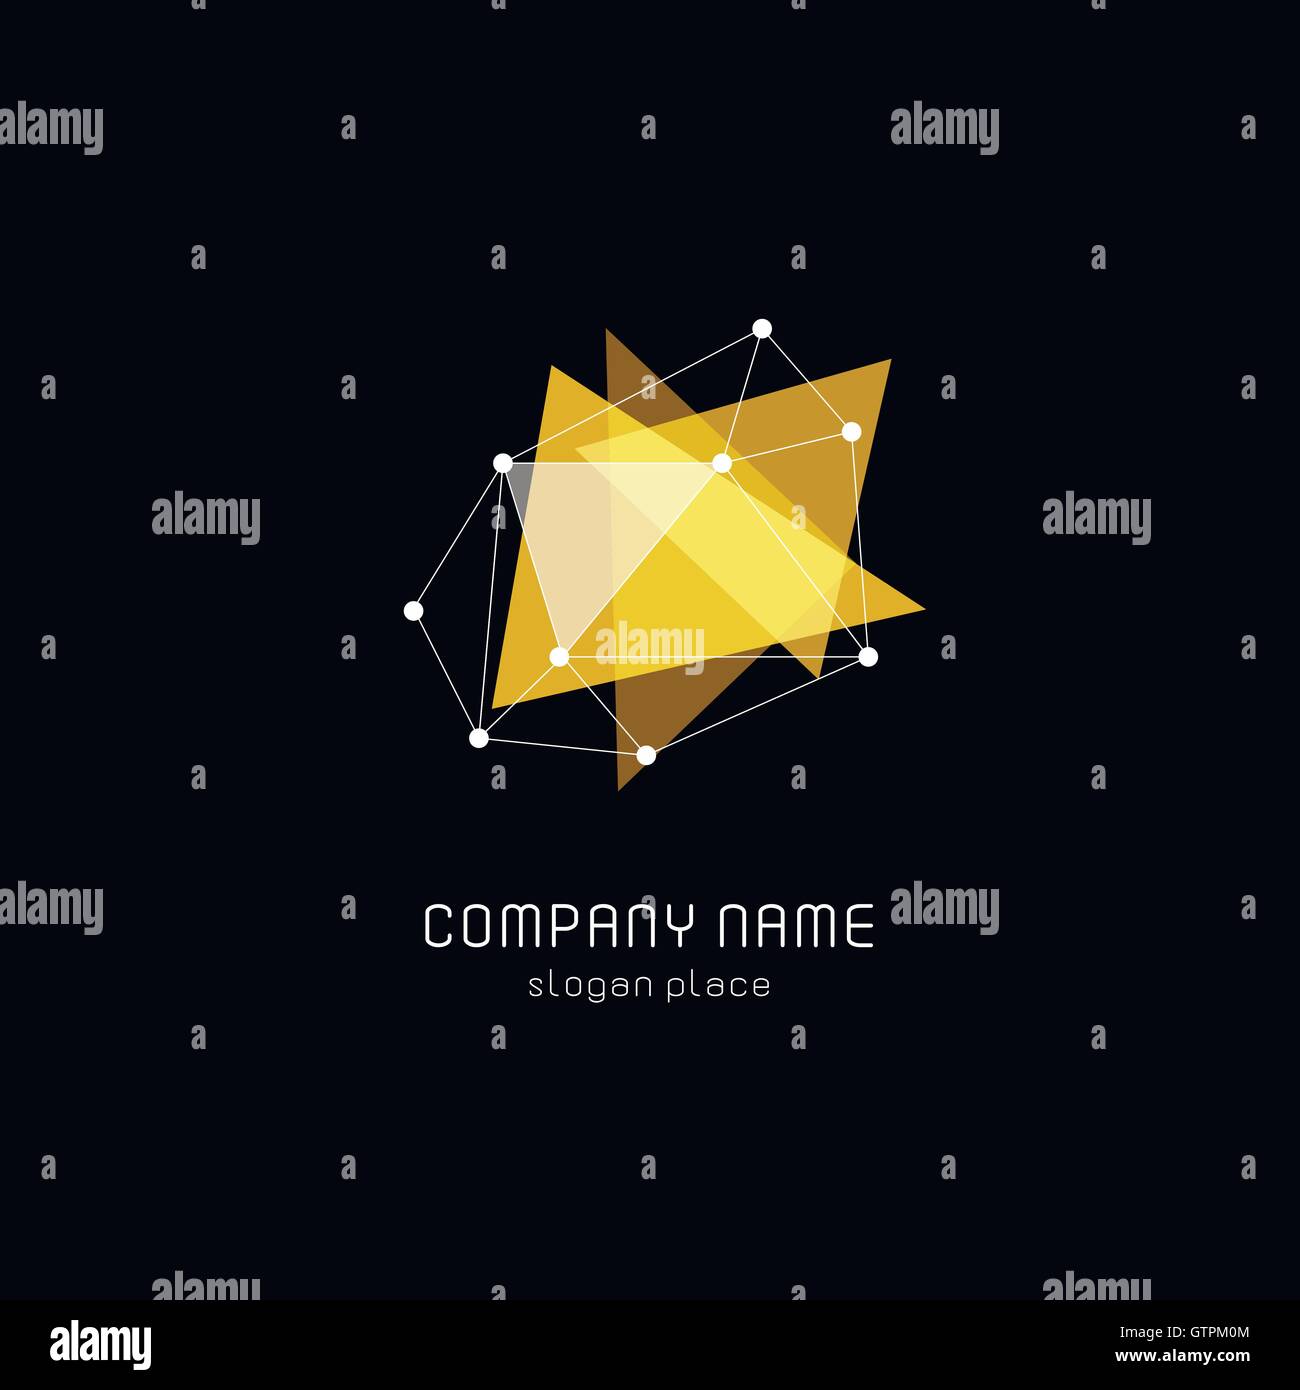 Isolierte abstrakte transluzente Dreiecke Vektor-Logo. Geometrische Form Schriftzug auf schwarzem Hintergrund. Gelbe Farbe glänzend polygo Stock Vektor